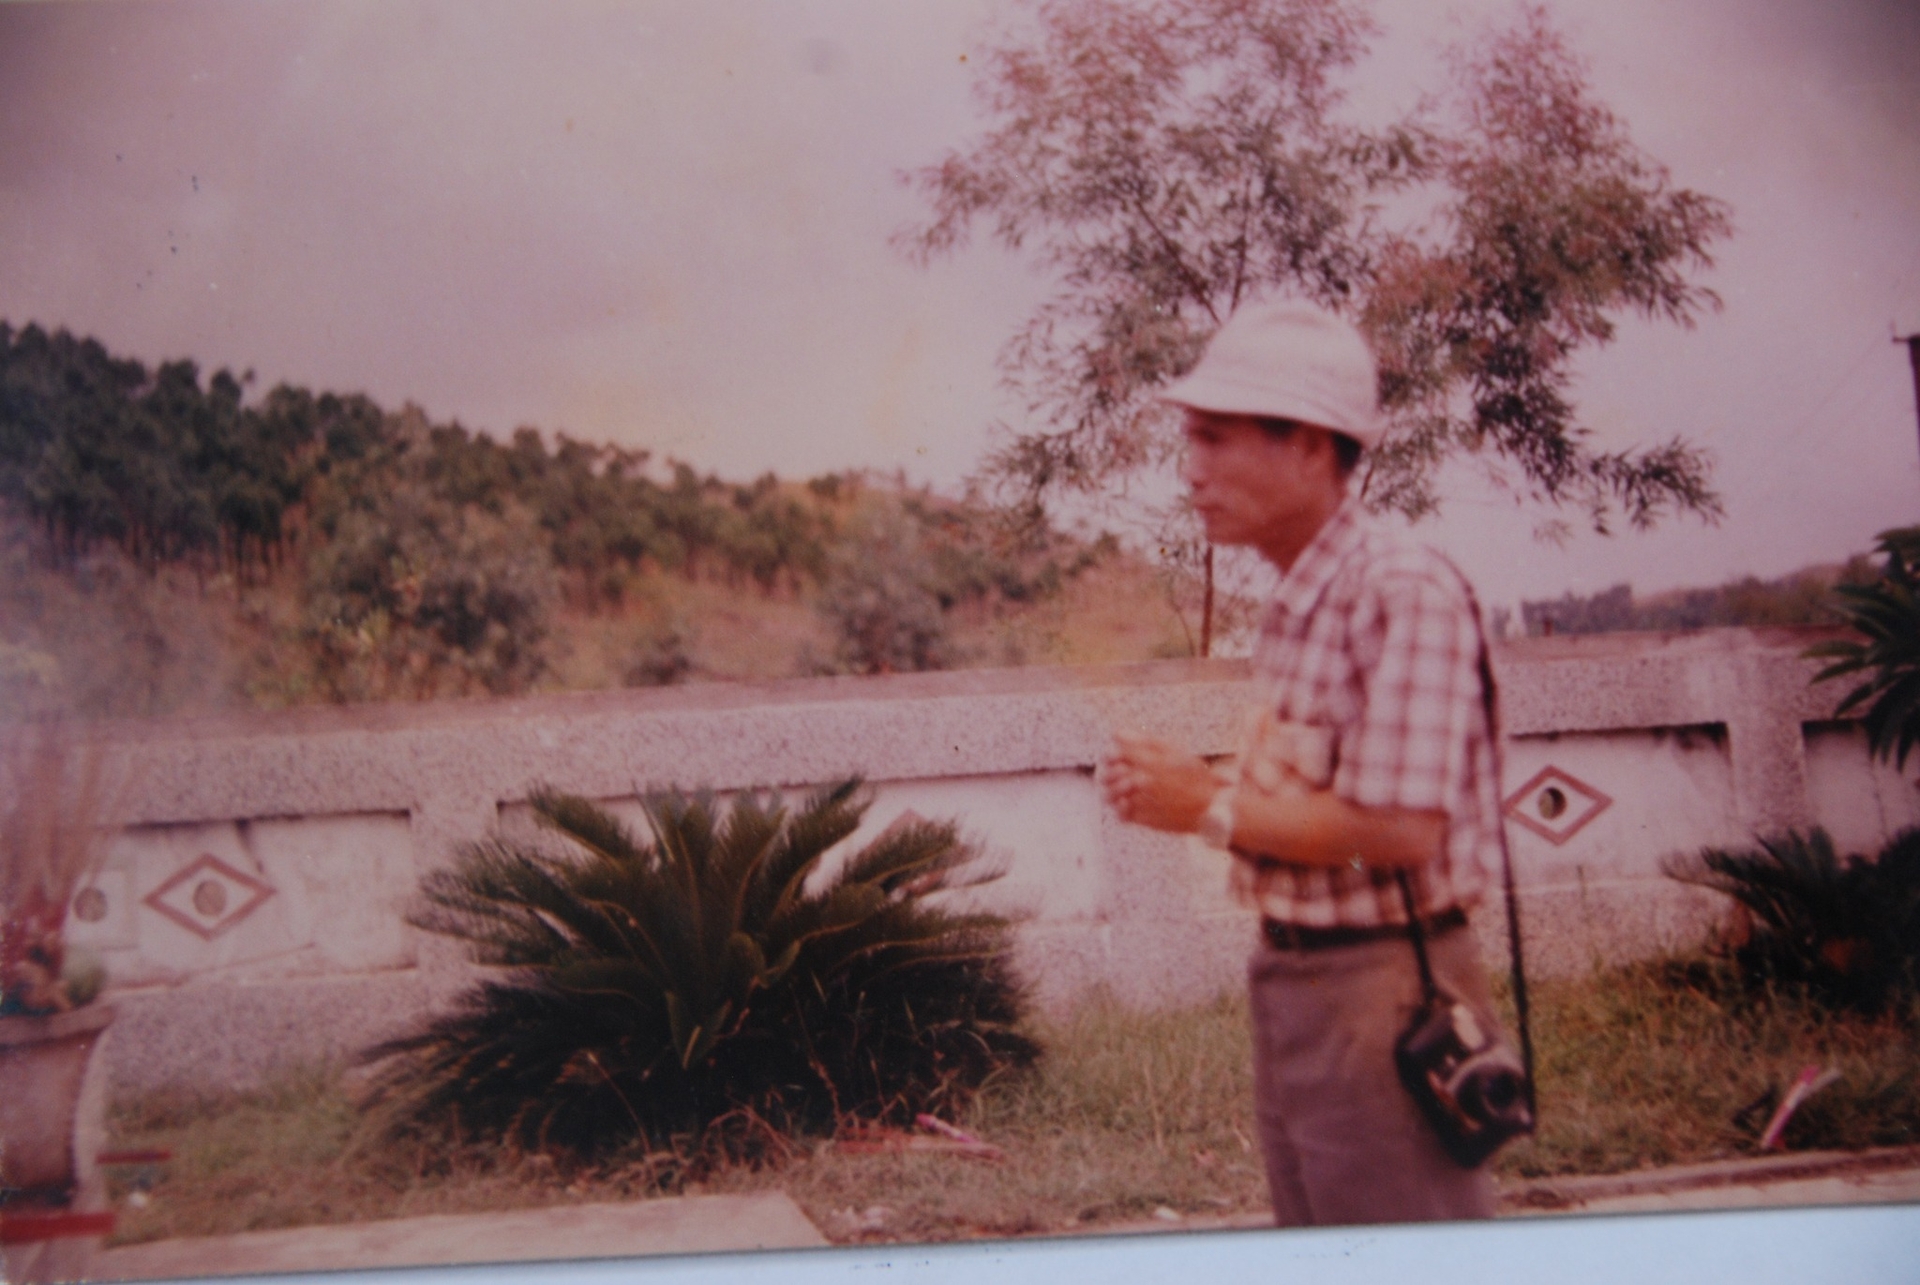 Nhà báo Văn Sắc trong khu Nghĩa trang Đồng Lộc năm 1992 (Thời điểm Khu Nghĩa trang chưa tu tạo). Ảnh: Xuân Ba.